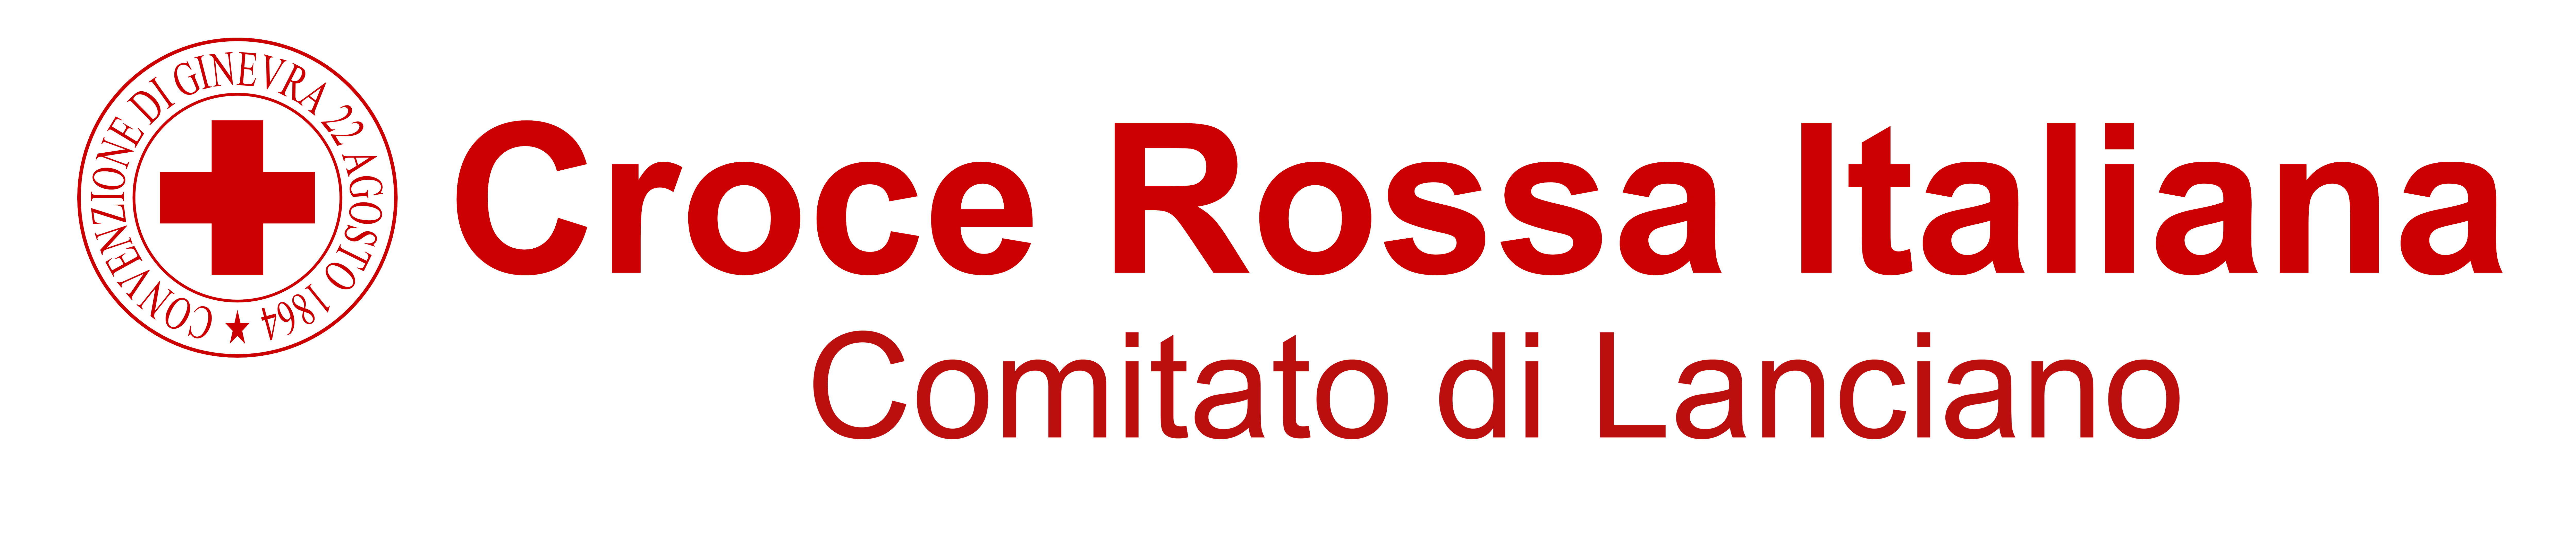 Logo Ufficiale Croce Rossa Italiana - Comitato di Lanciano